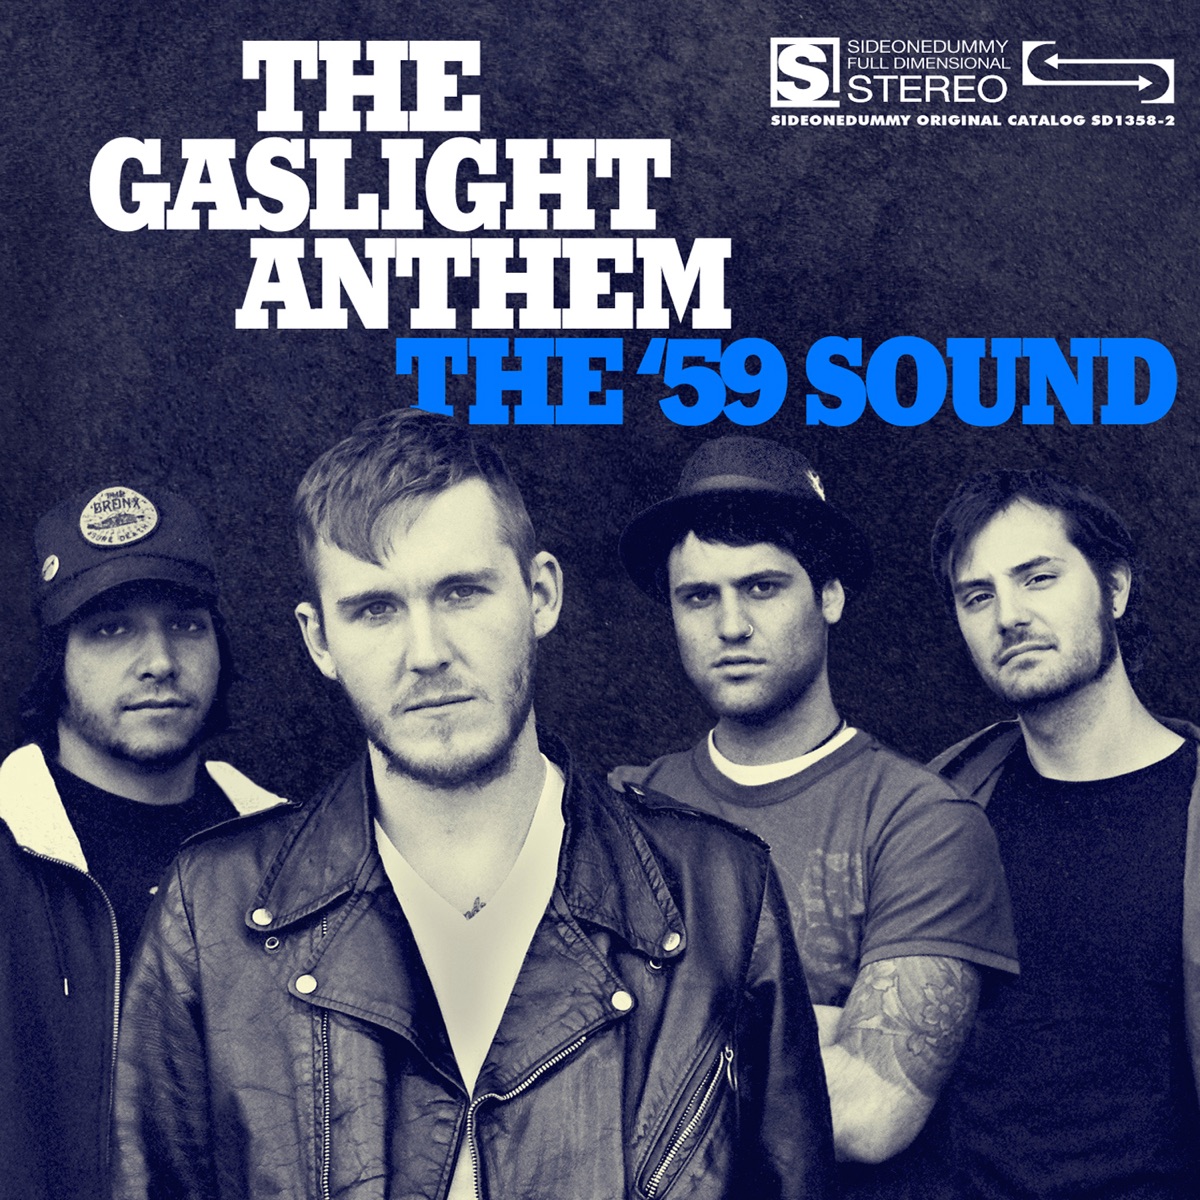 #UnDíaComoHoy hace 15 años, salió a luz pública ‘The '59 Sound’, el segundo álbum de estudio de #theGaslightAnthem. ❤️‍🔥